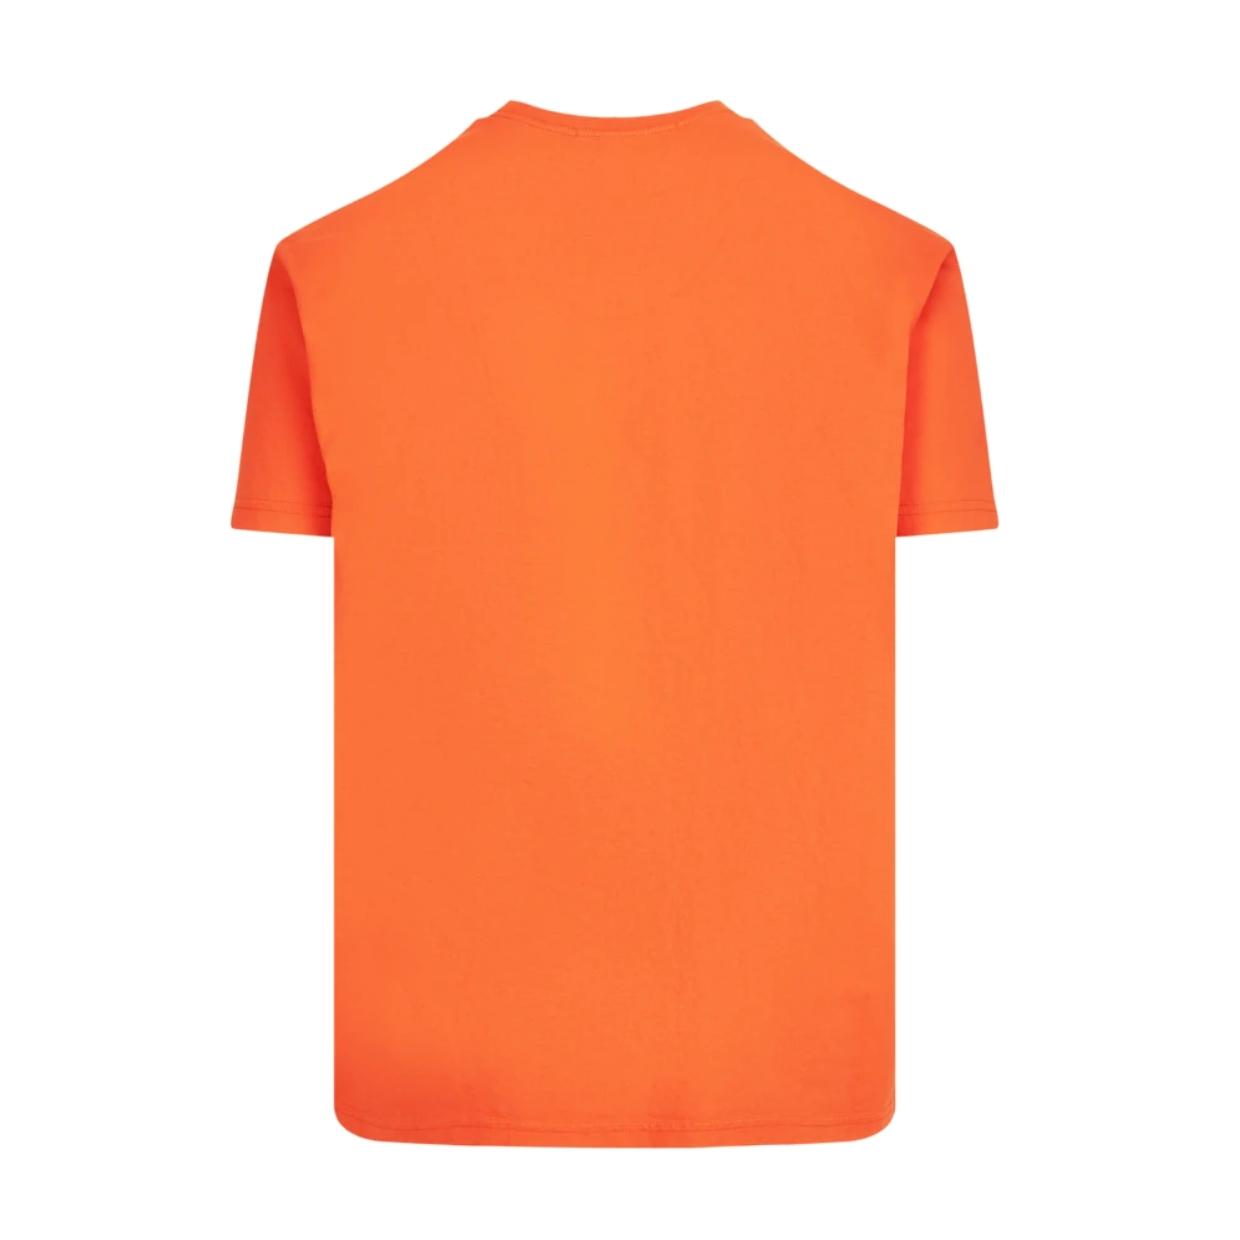 Vivienne Westwood Orange Classic T-Shirt